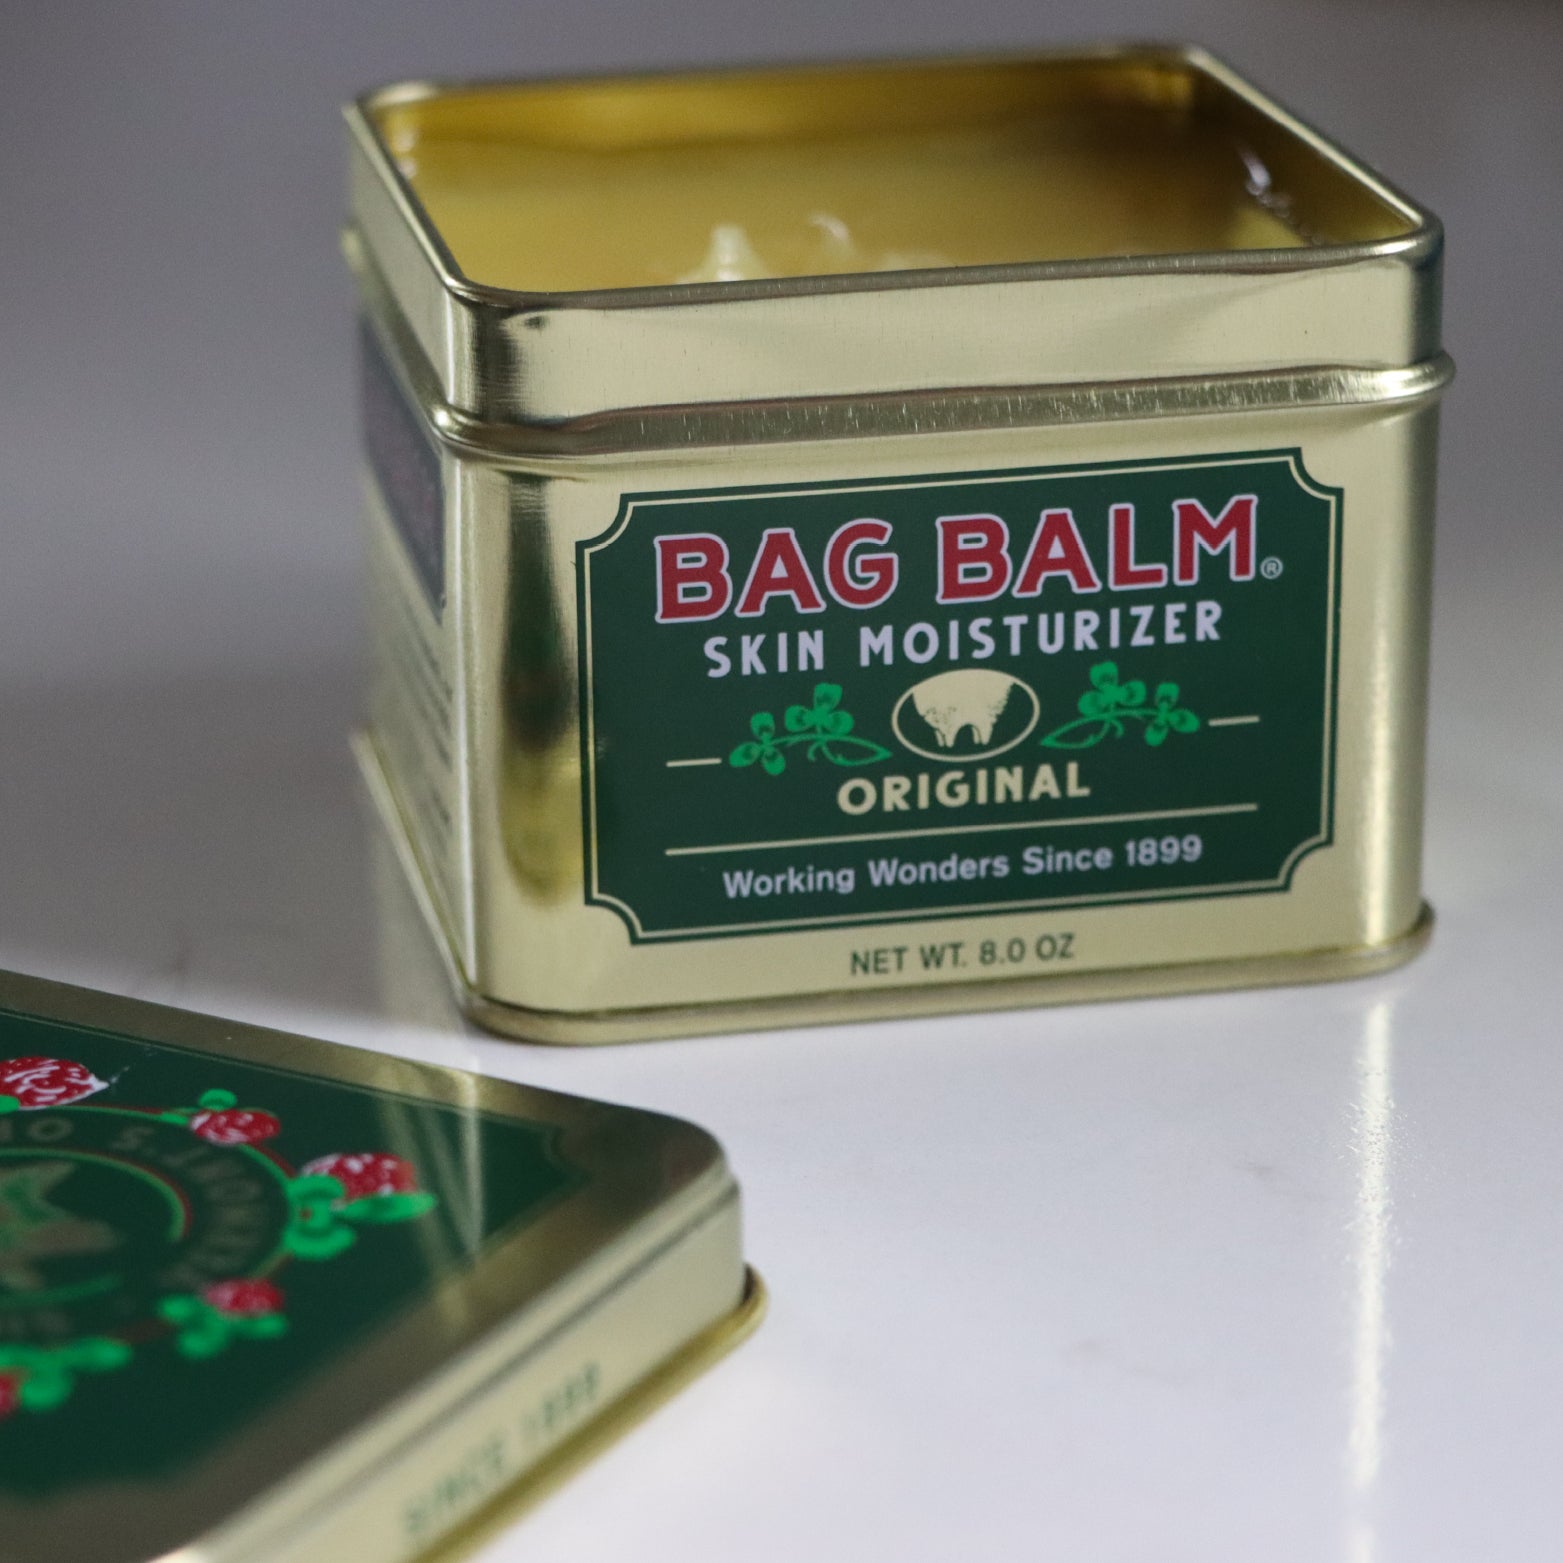 Bag Balm Original Skin Moisturizer - Aiken, SC - Aiken County Farm Supply